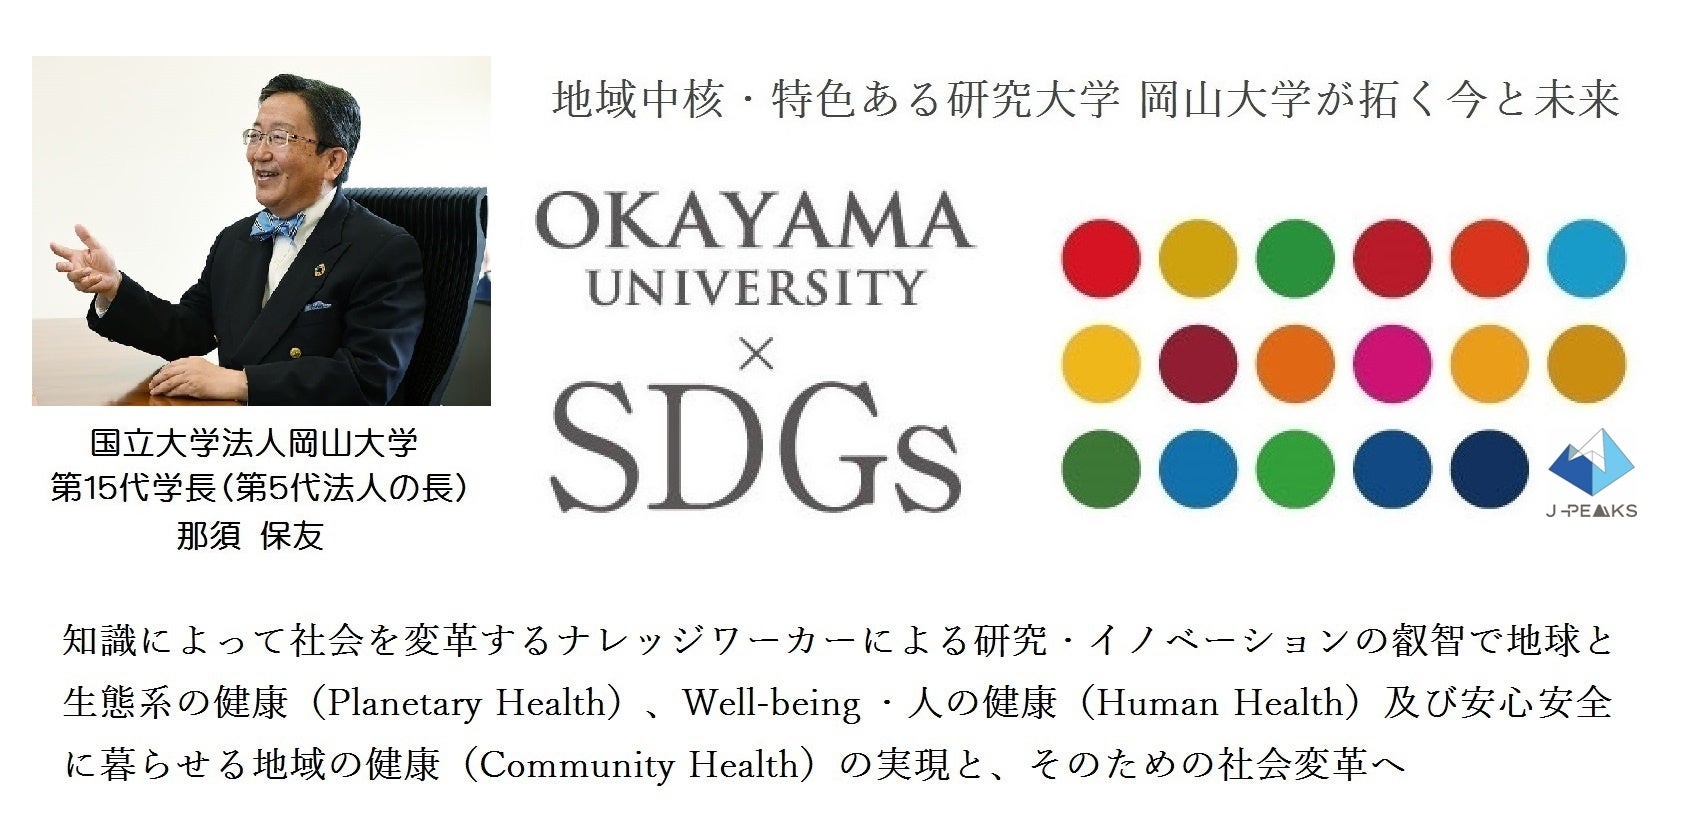 【岡山大学】OTバルーンカテーテル®の目詰まり特性評価 ～行動制限の少ない排尿管理の実現を目指して～